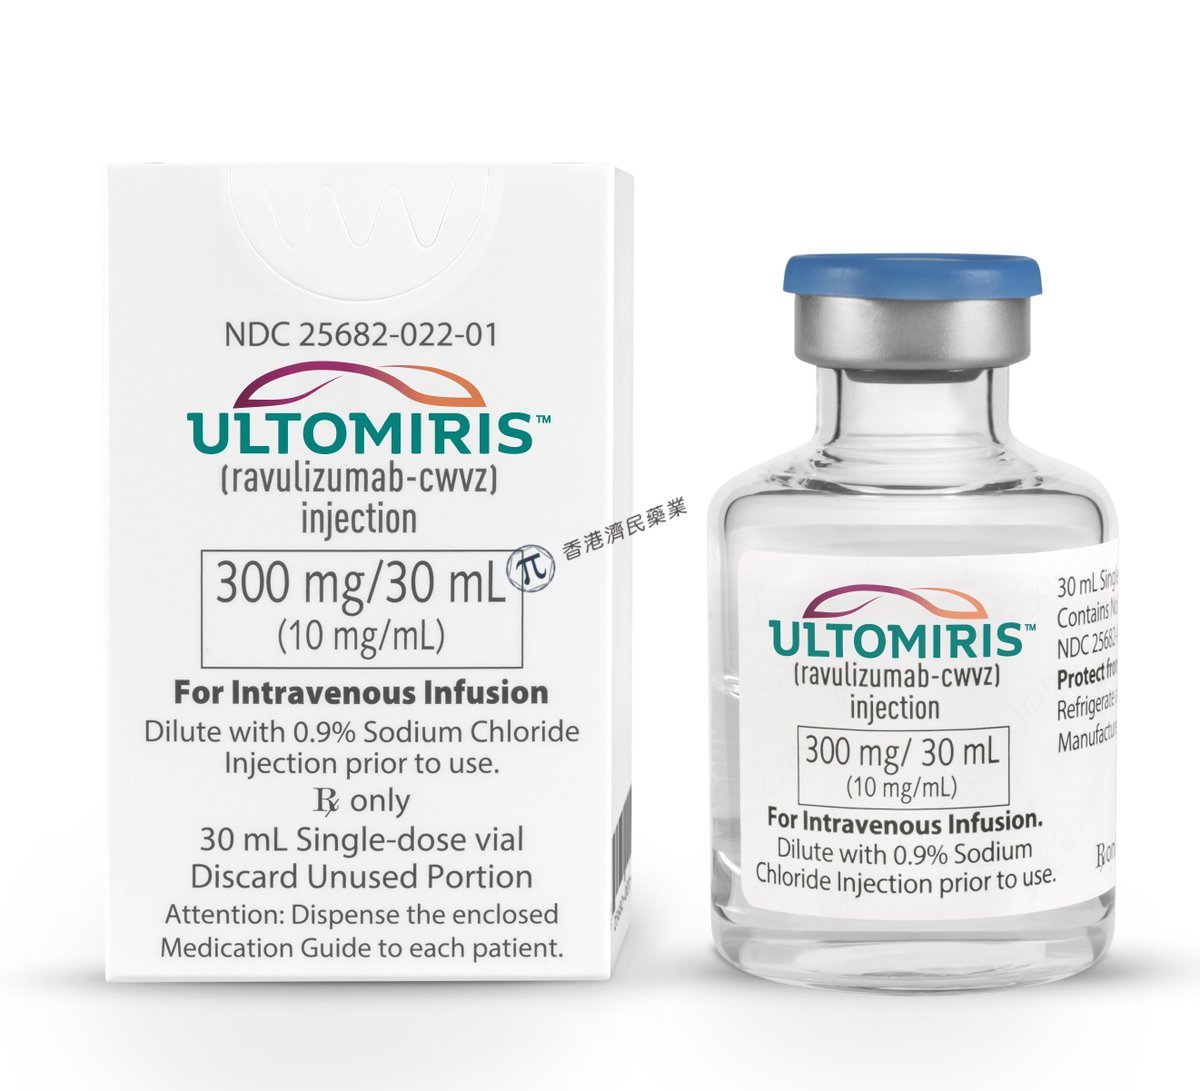 欧盟批准Ultomiris（ravulizumab）治疗儿童&青少年阵发性夜间血红蛋白尿(PNH)